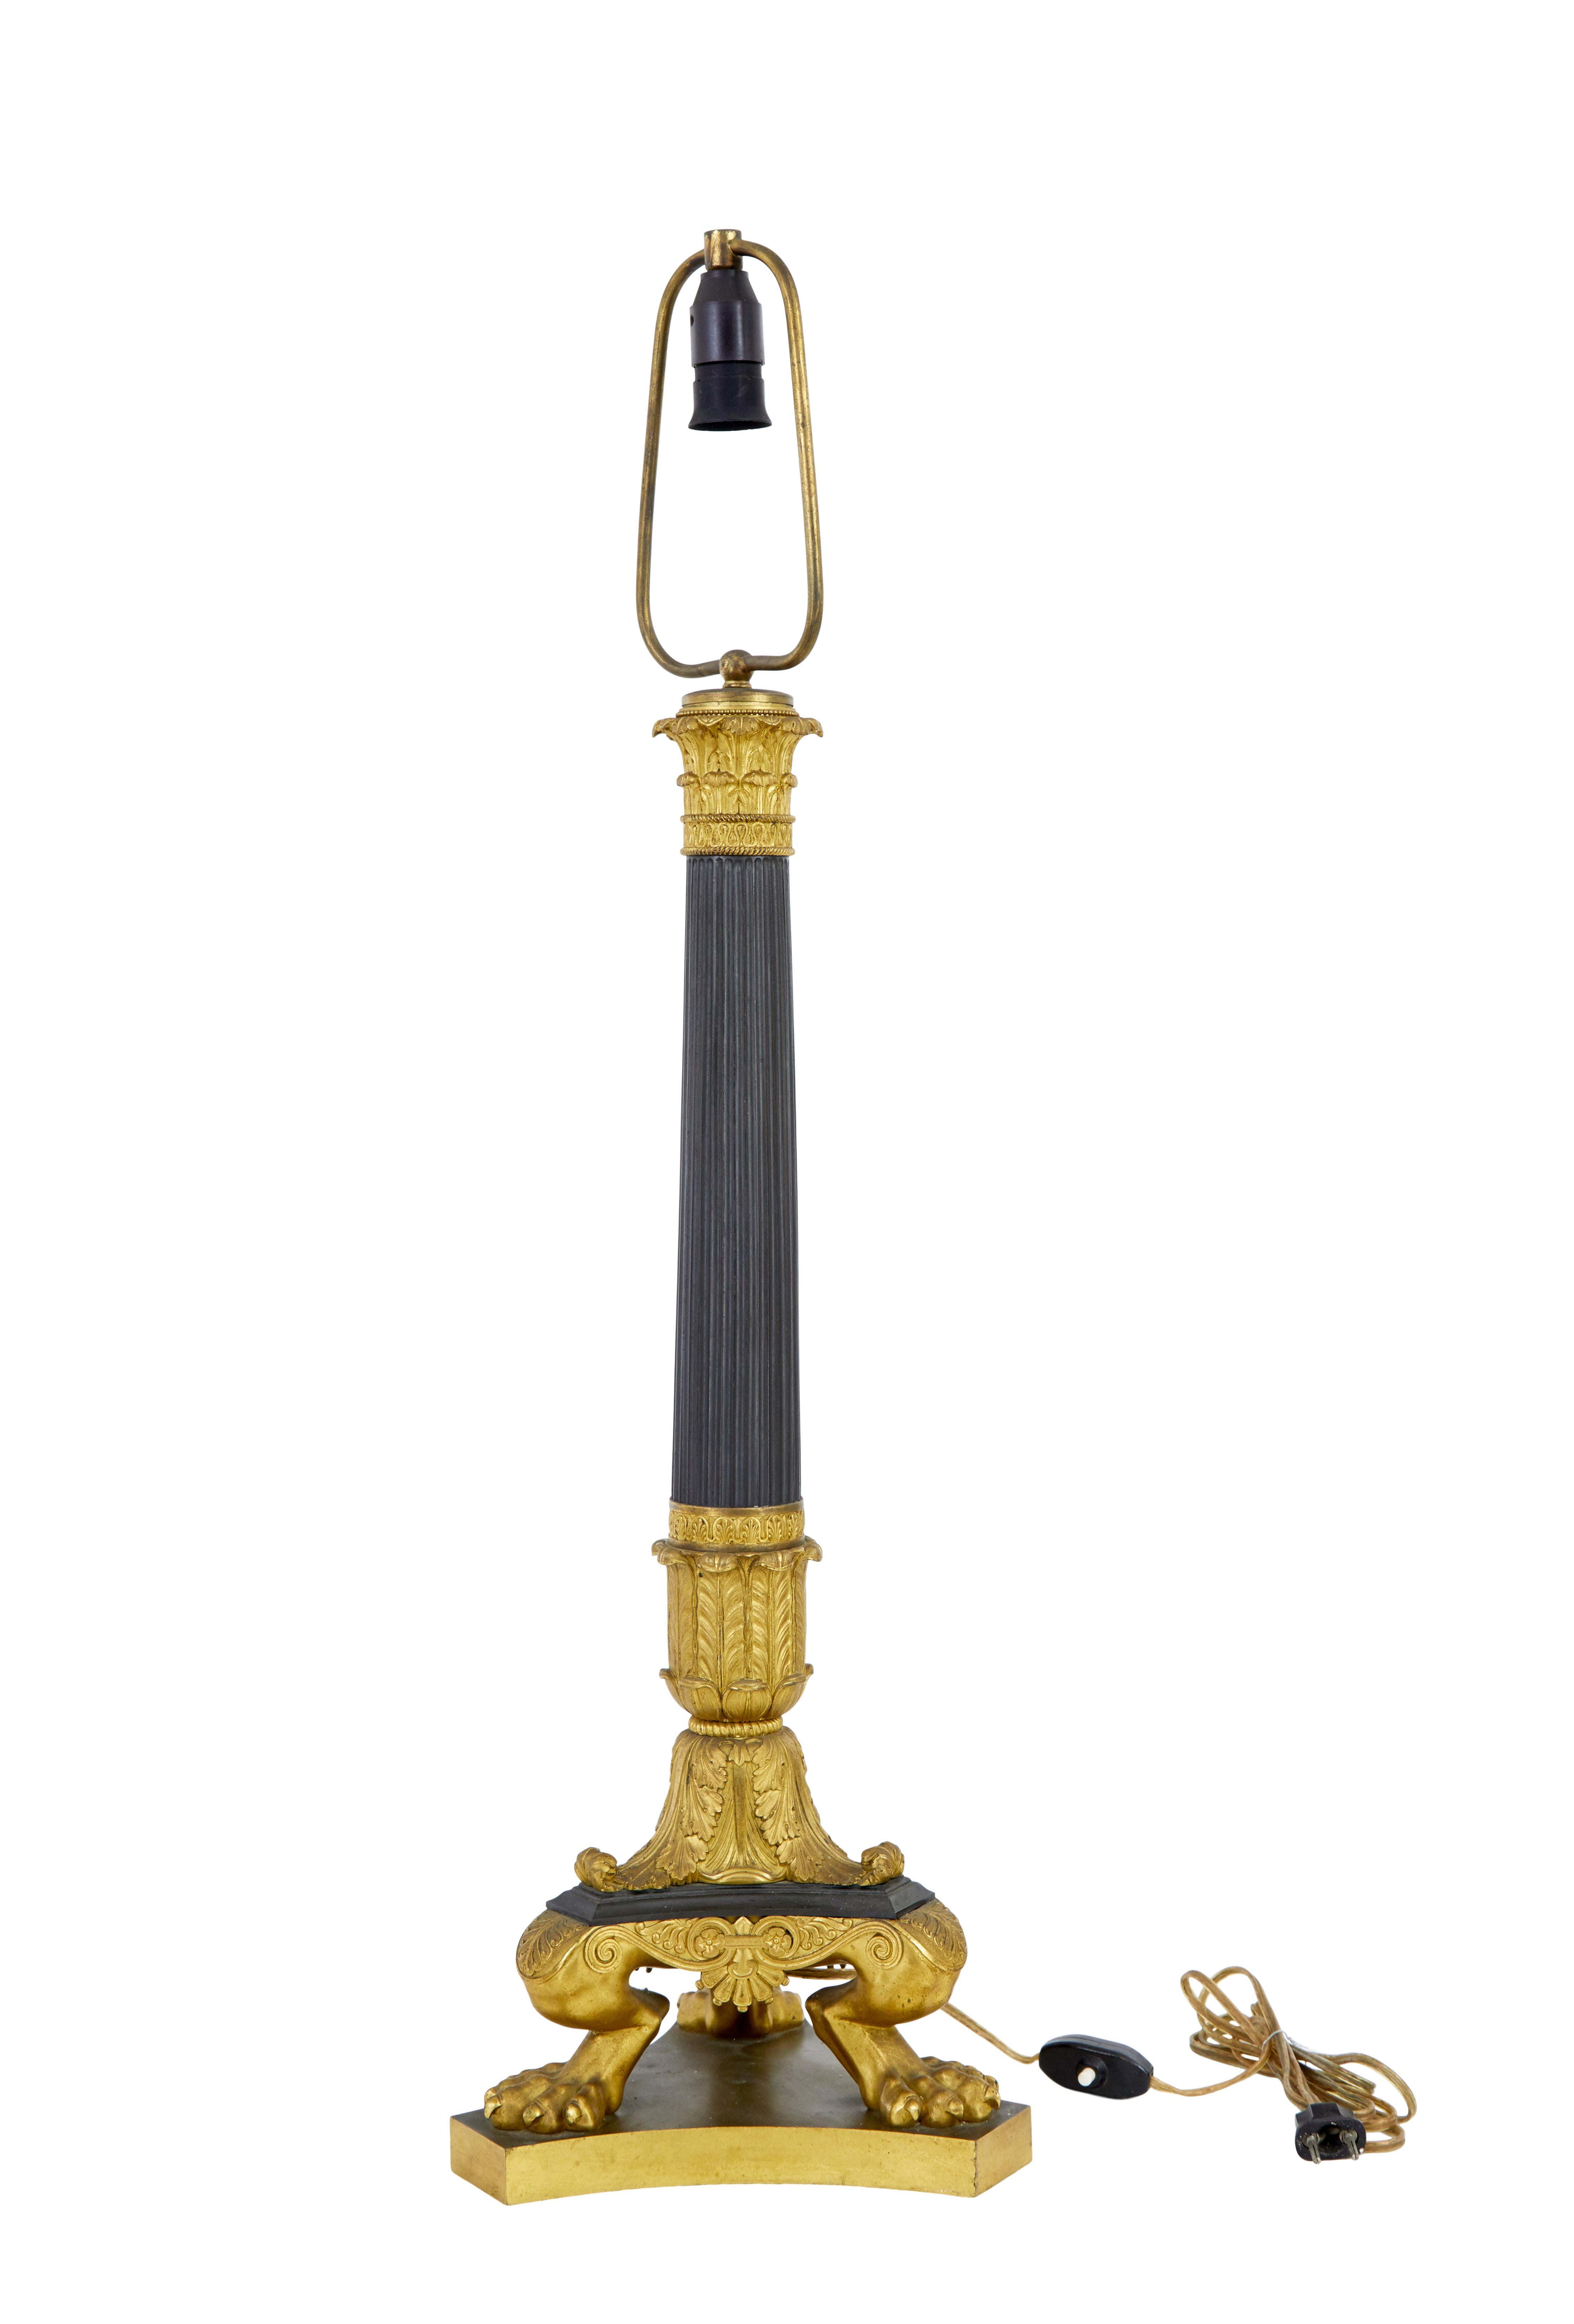 Große französische Empire-Bronze-Ormolu-Lampe des 19. Jahrhunderts, um 1860.

Hier haben wir eine Lampe von feinster Qualität, die früher eine Gaslampe war, aber in den 1930er Jahren auf Strom umgestellt wurde.

Große Lampe mit kannelierter